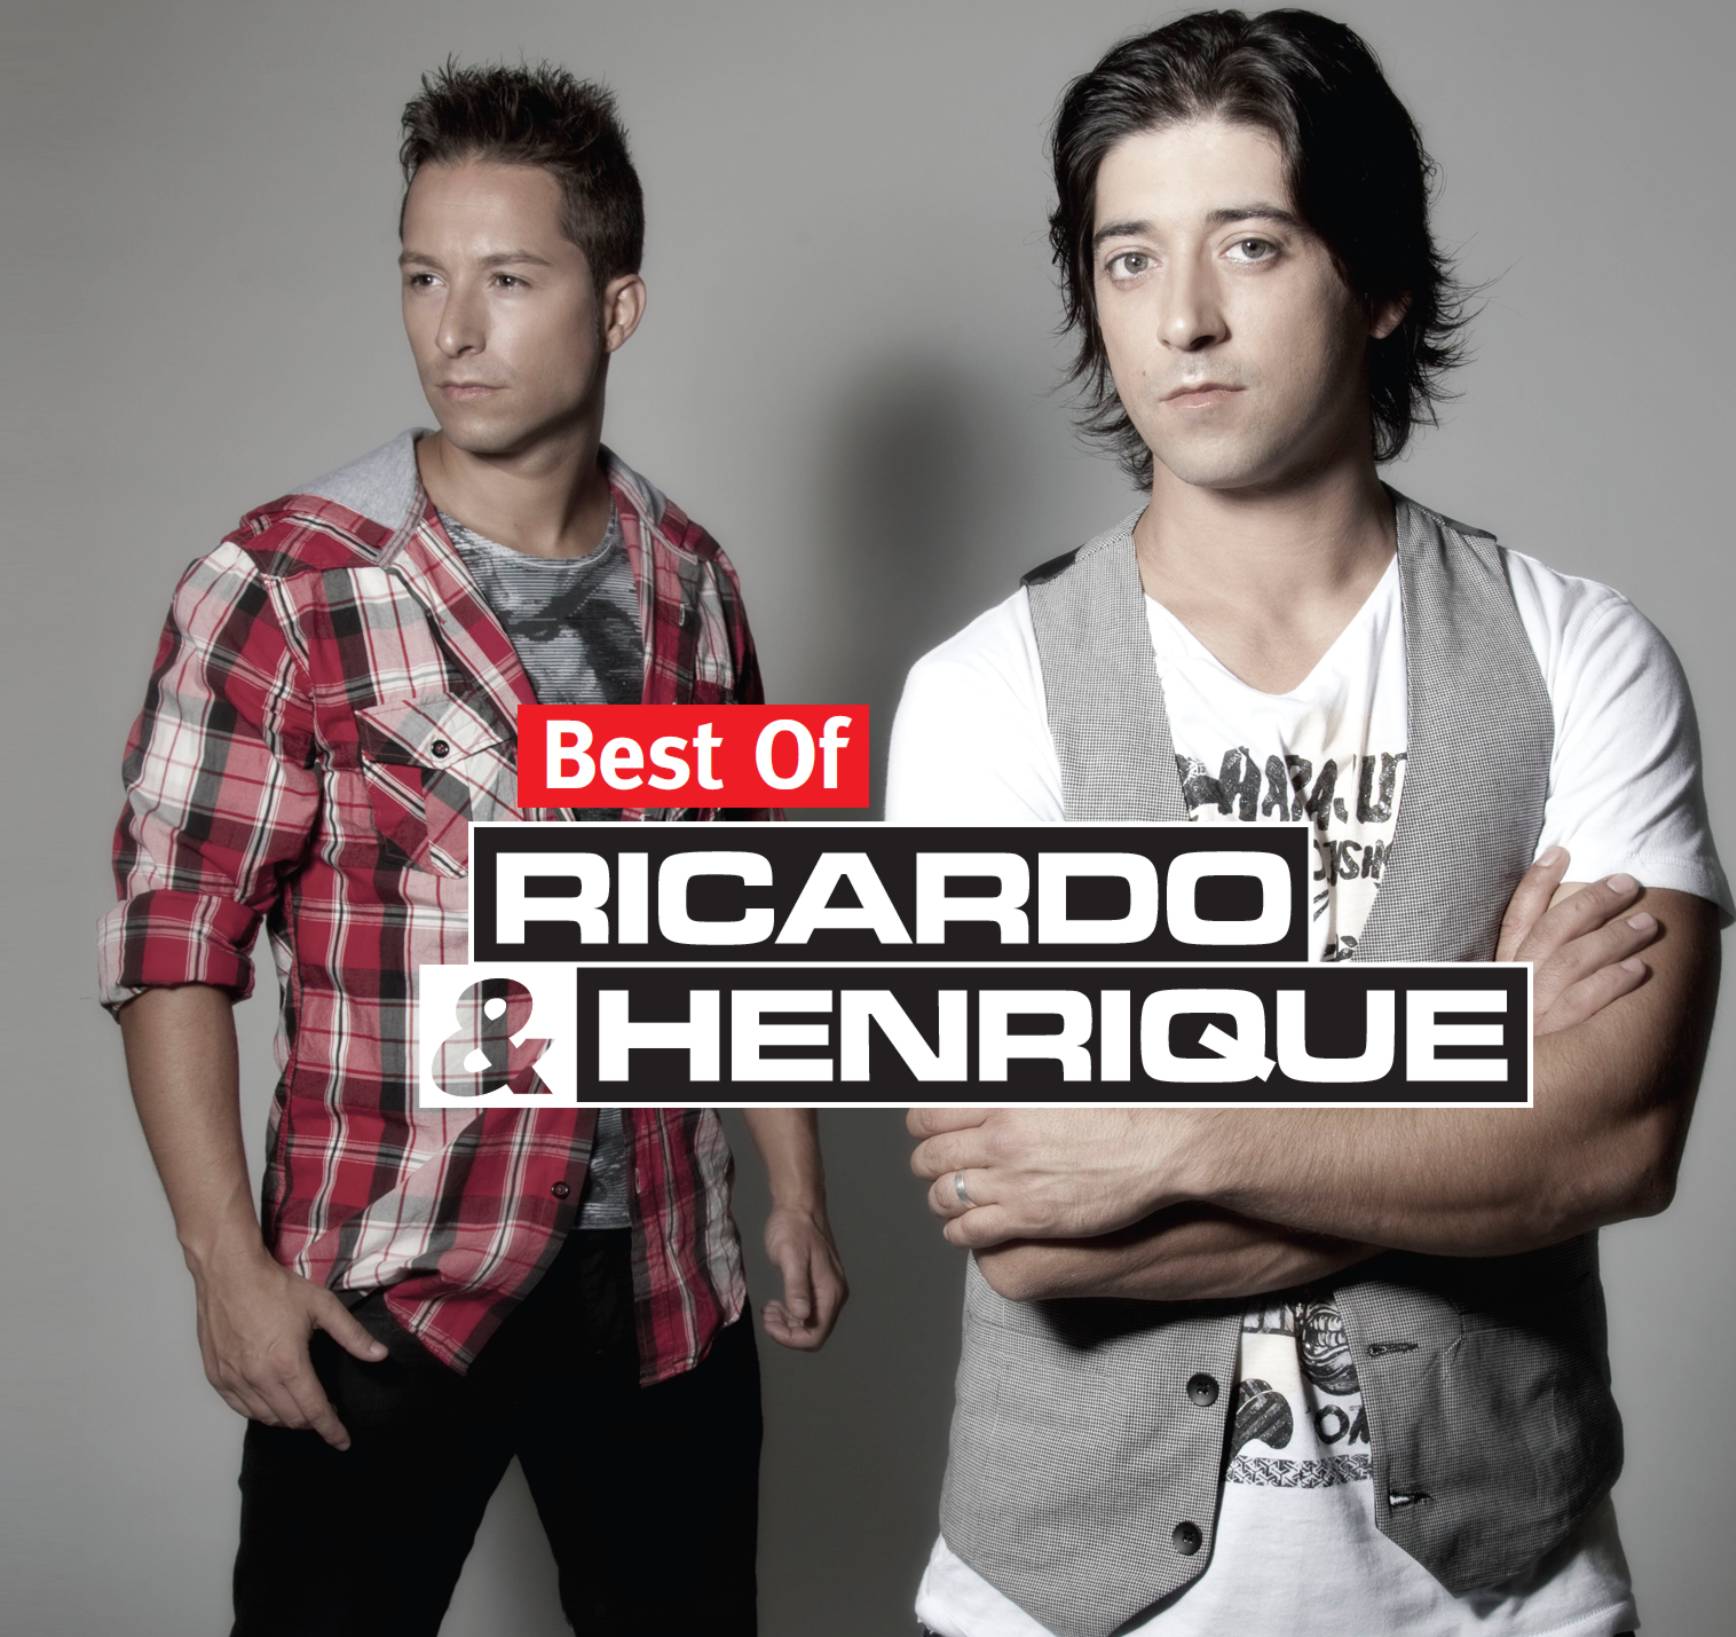 Ricardo & Henrique (2010)